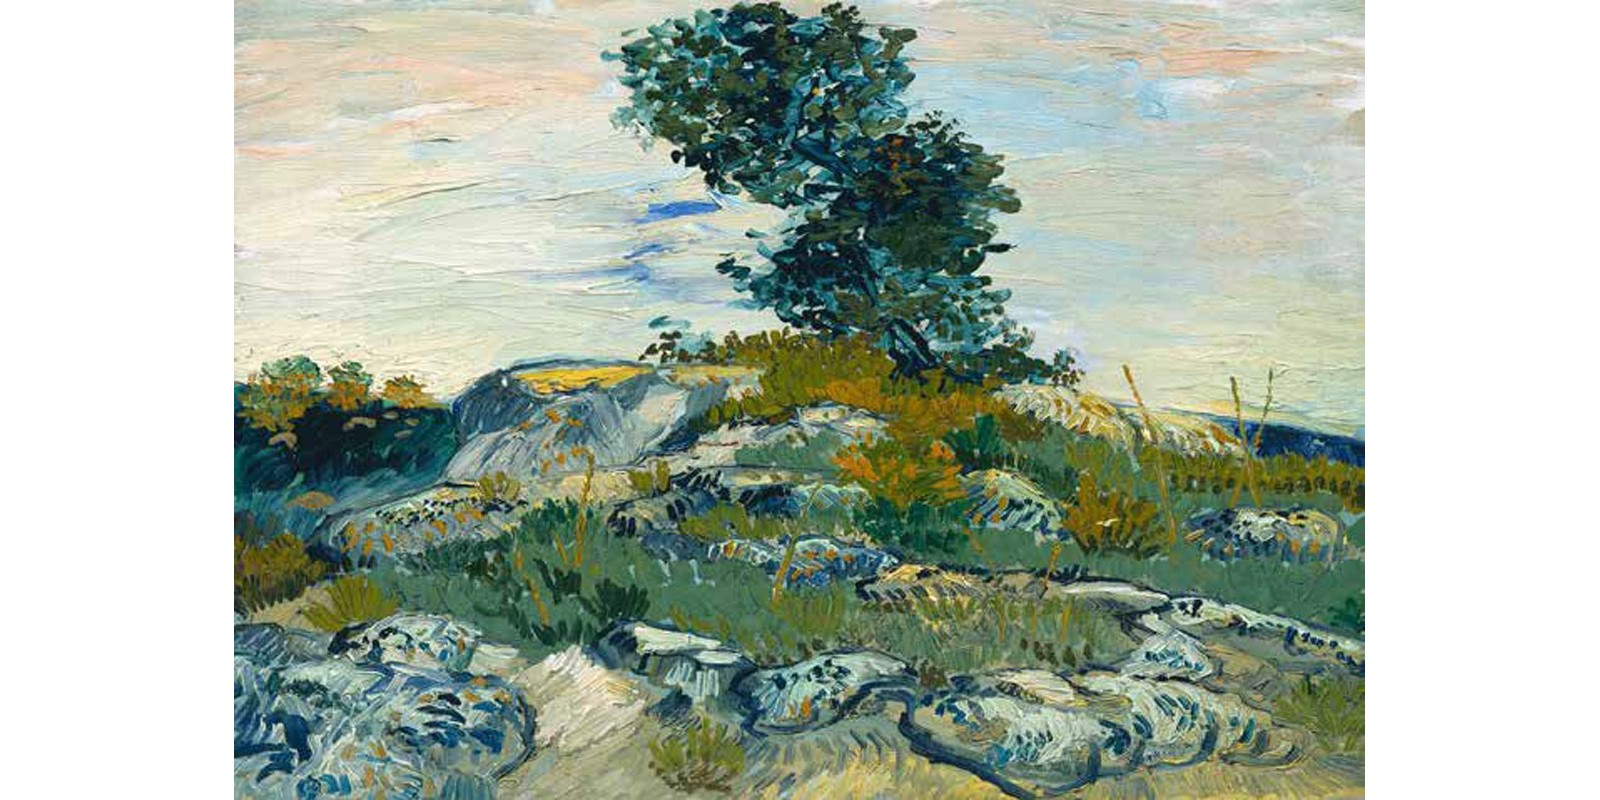 Vincent Van Gogh - The Rocks